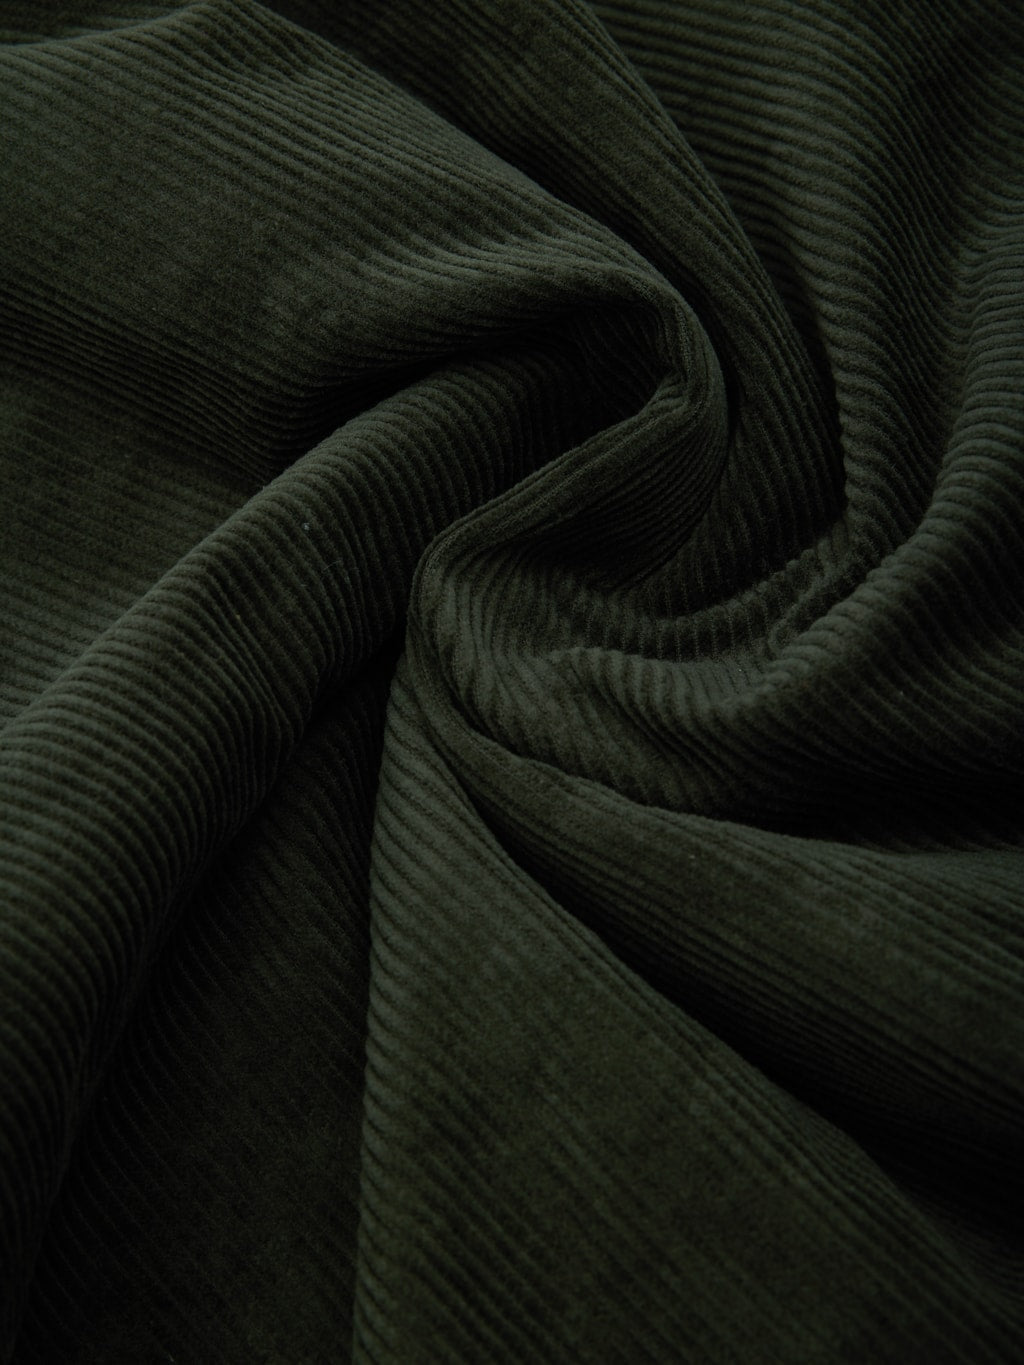 Tanuki Sazanami Corduroy Bayberry Dyed Green Jacket 100 cotton